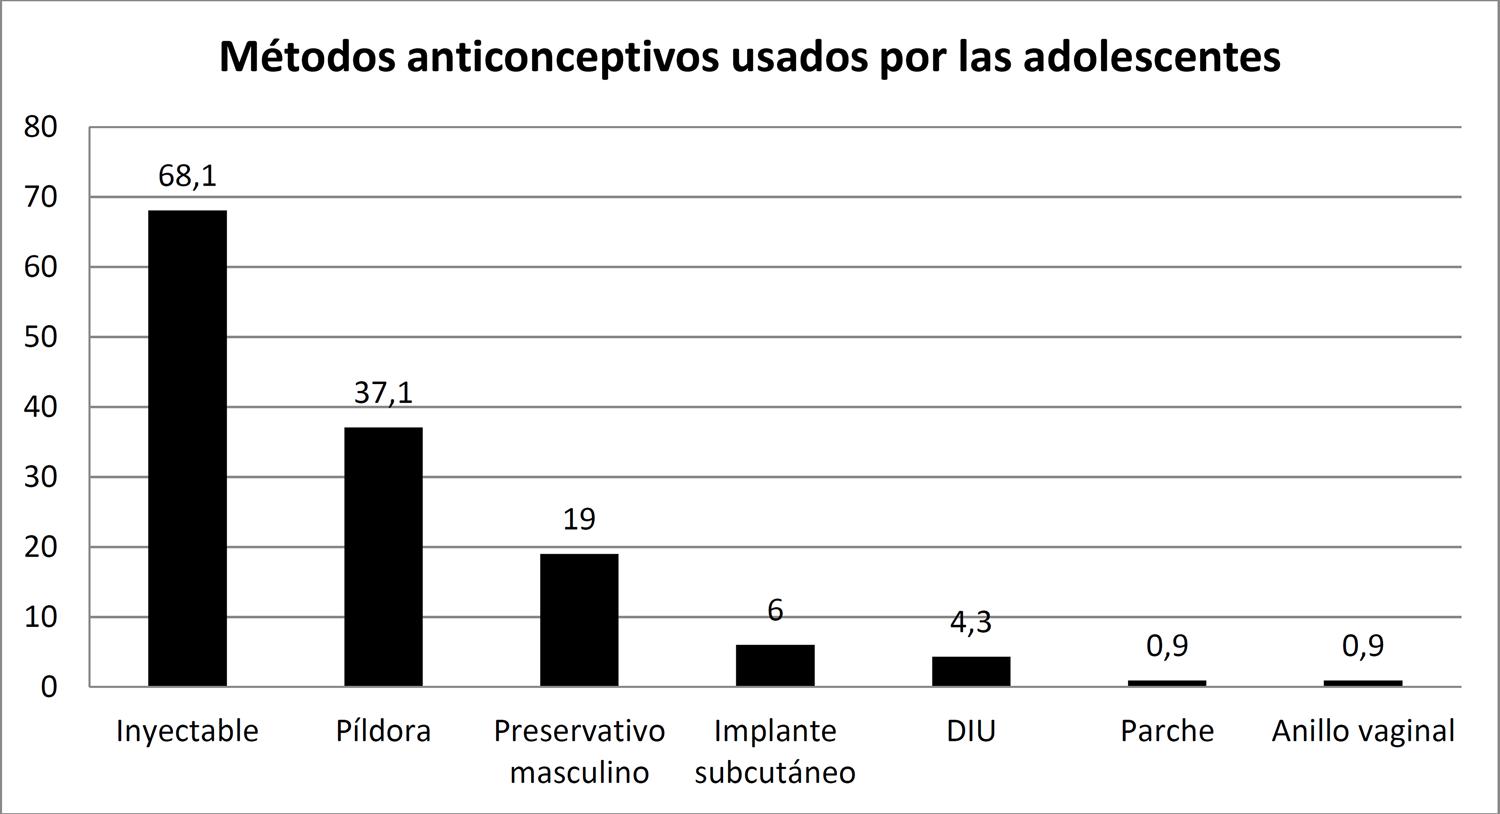 Métodos de regulación de fertilidad en Chile